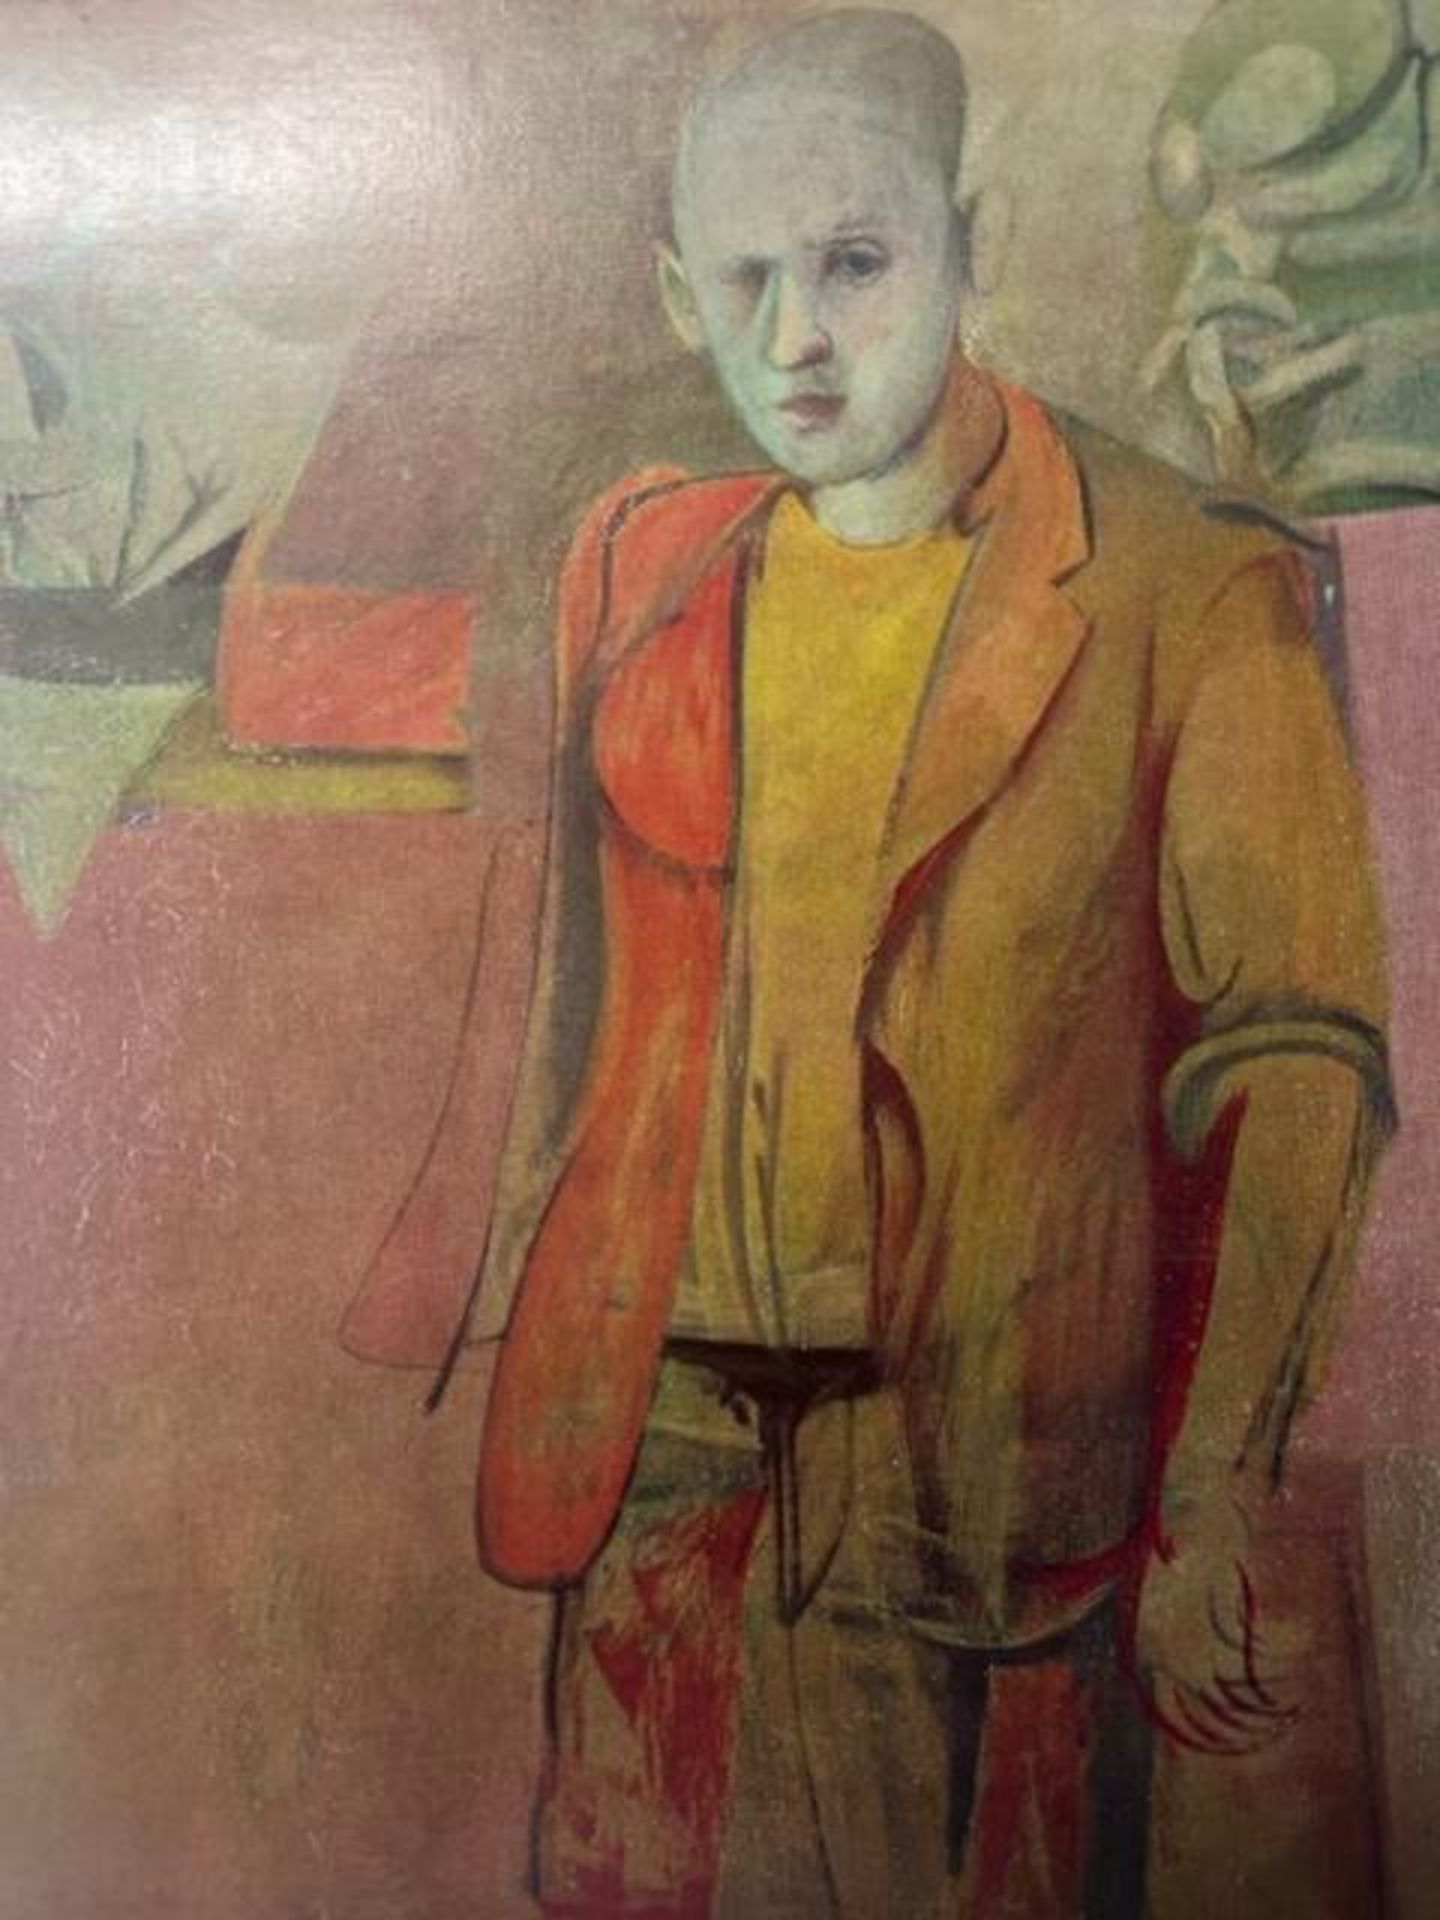 Willem de Kooning "Standing Man" Print.